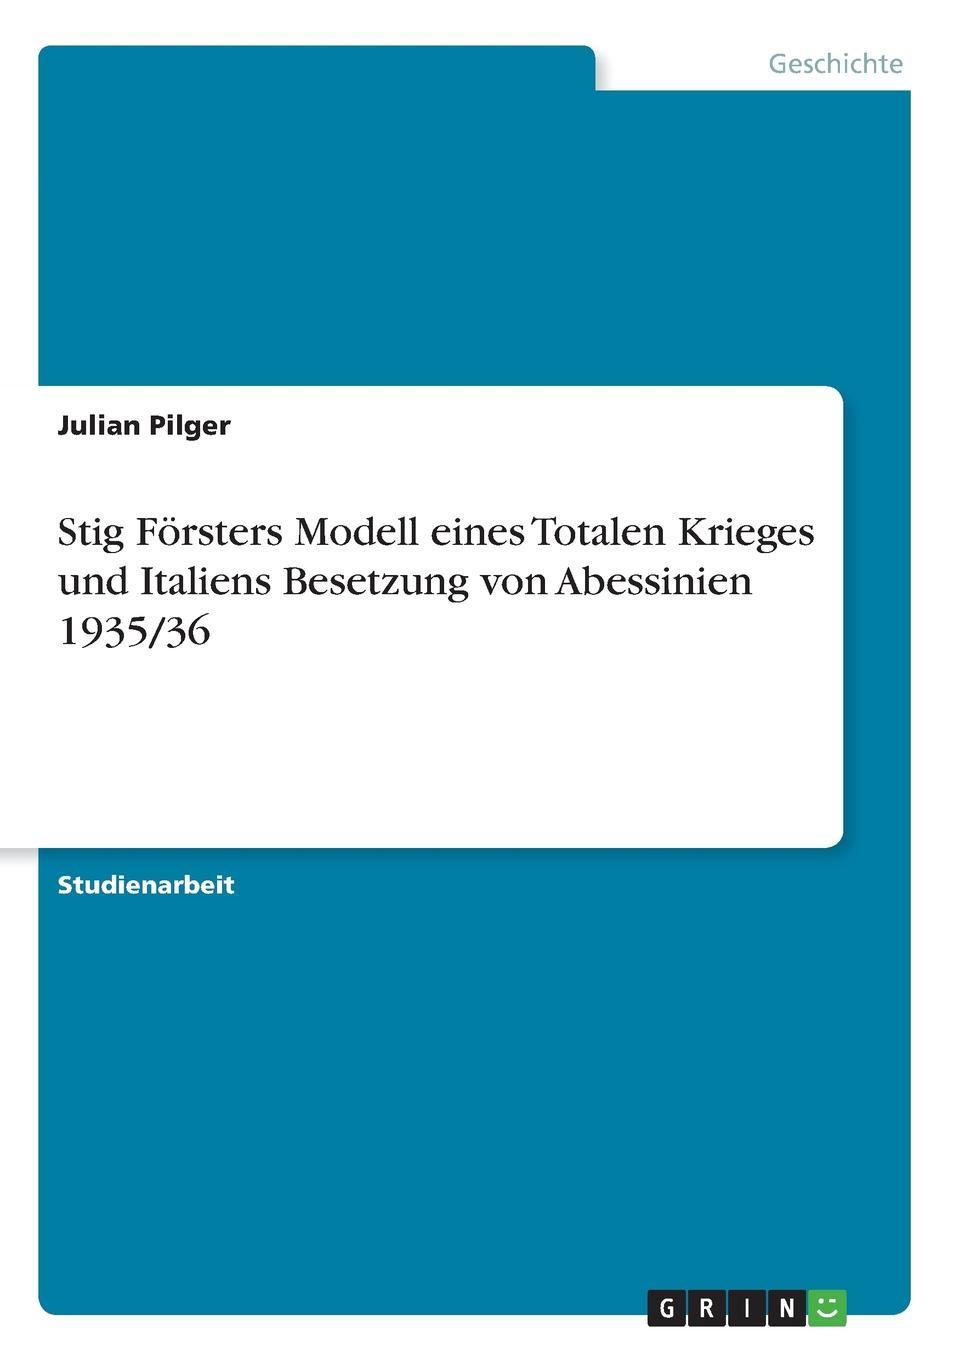 Stig Forsters Modell eines Totalen Krieges und Italiens Besetzung von Abessinien 1935/36